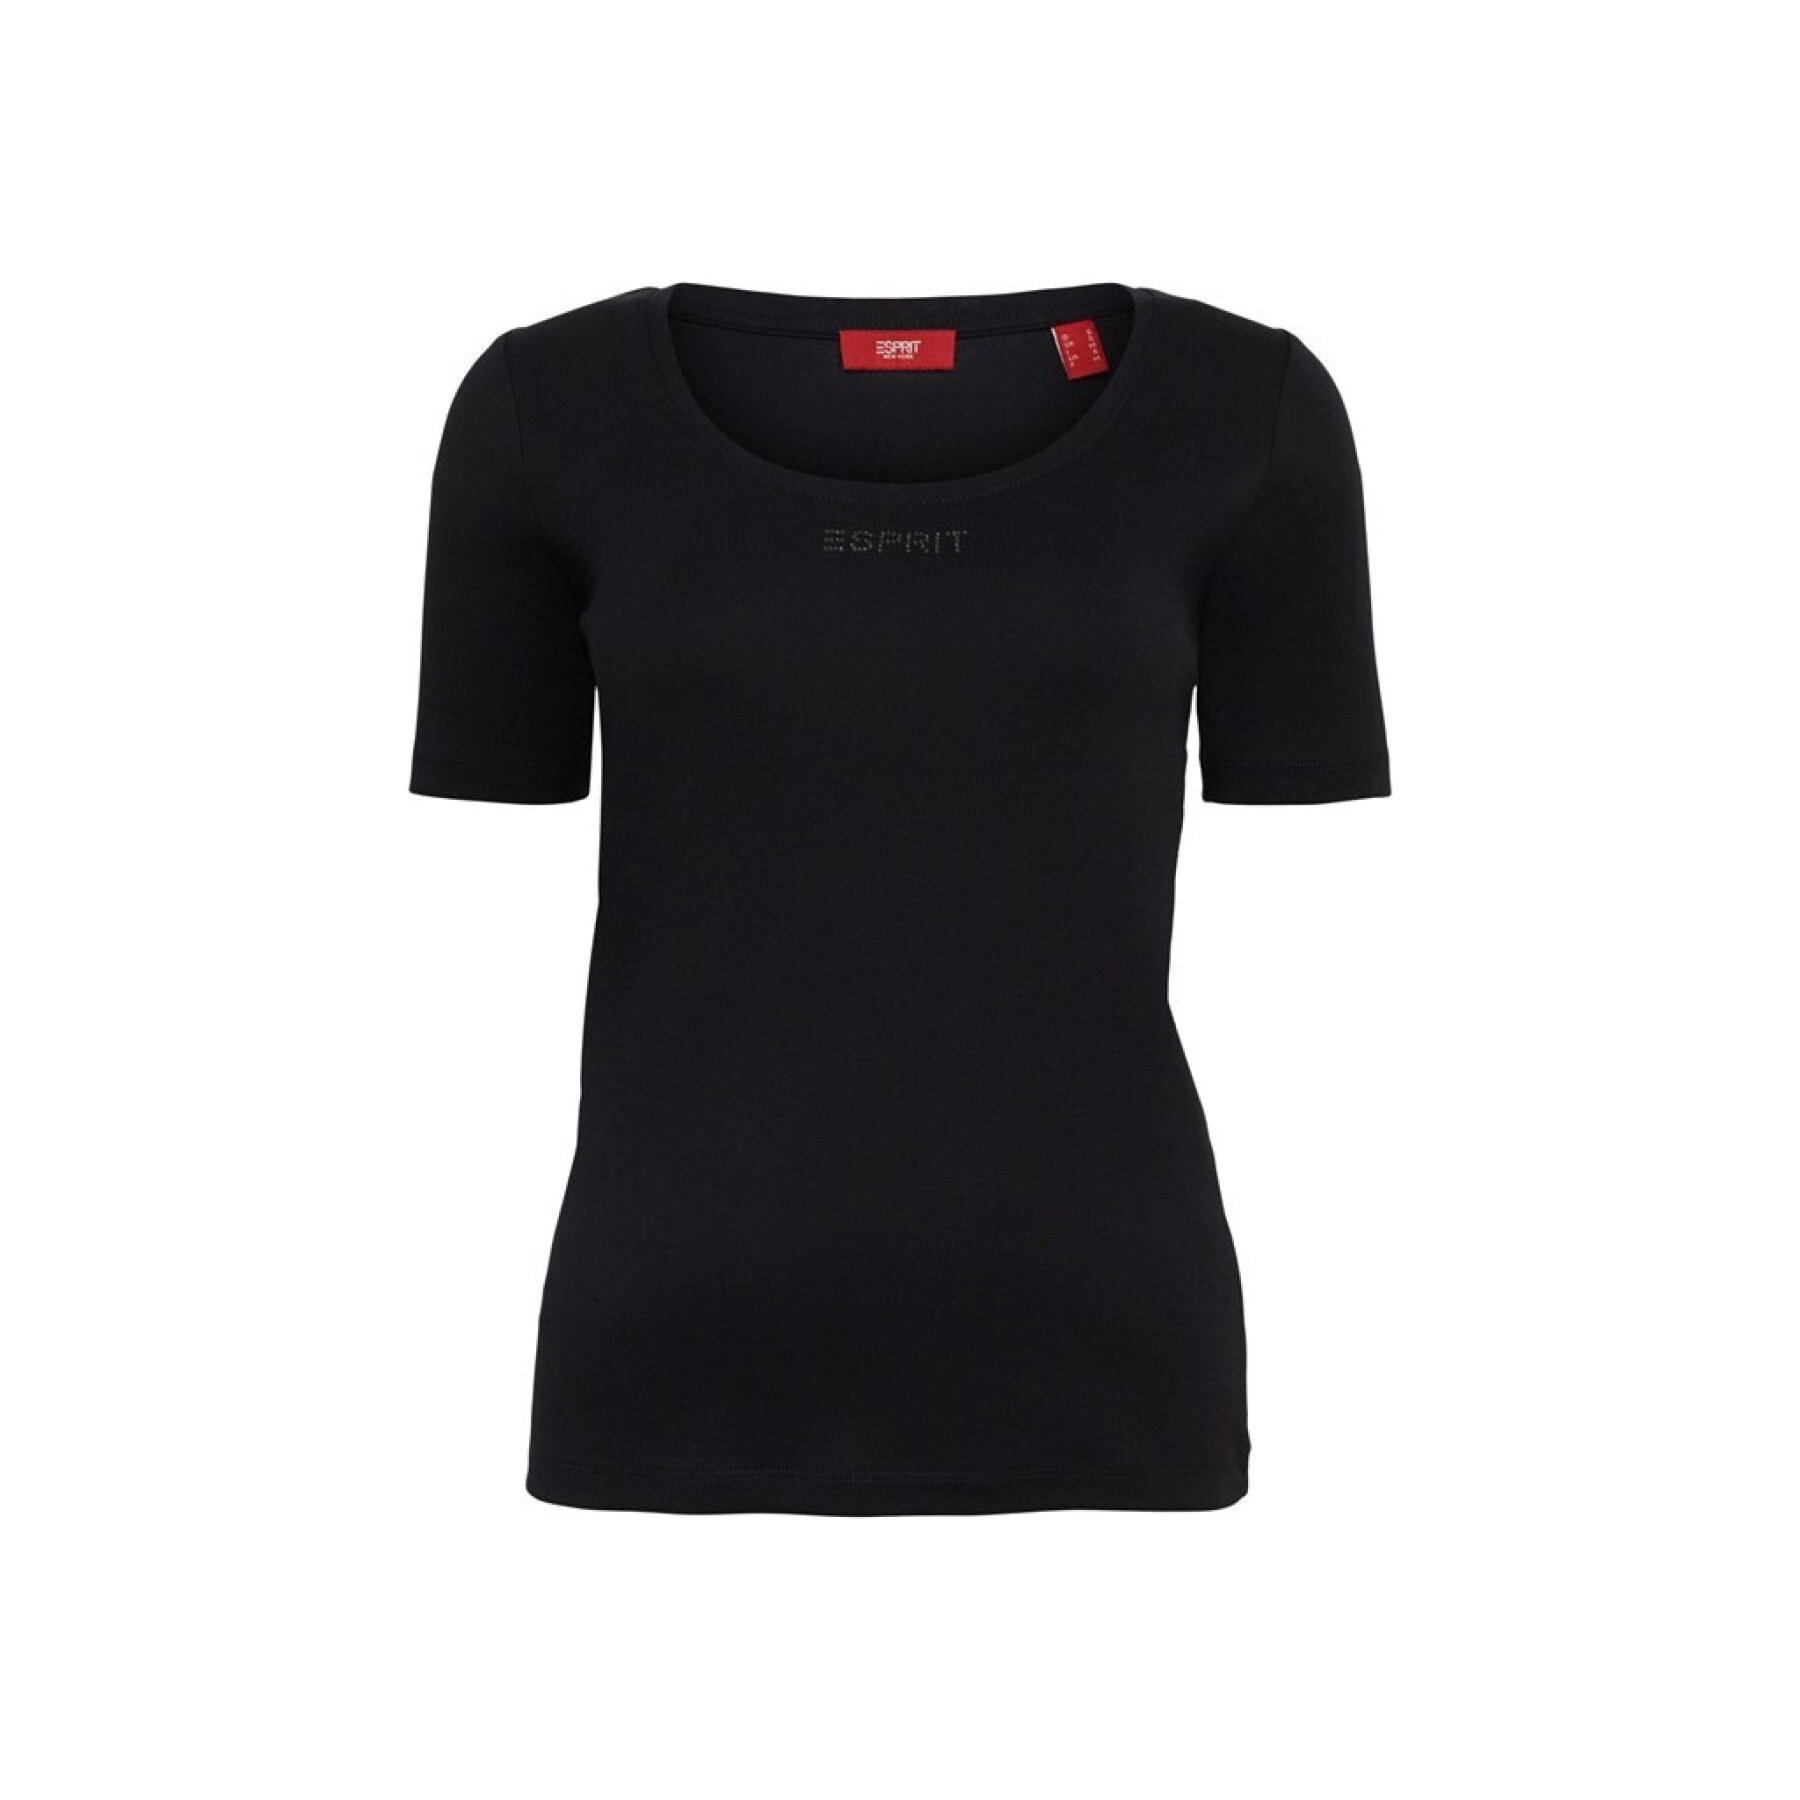 Women's T-shirt Esprit - T-shirts & Tank Tops - Clothing - Women